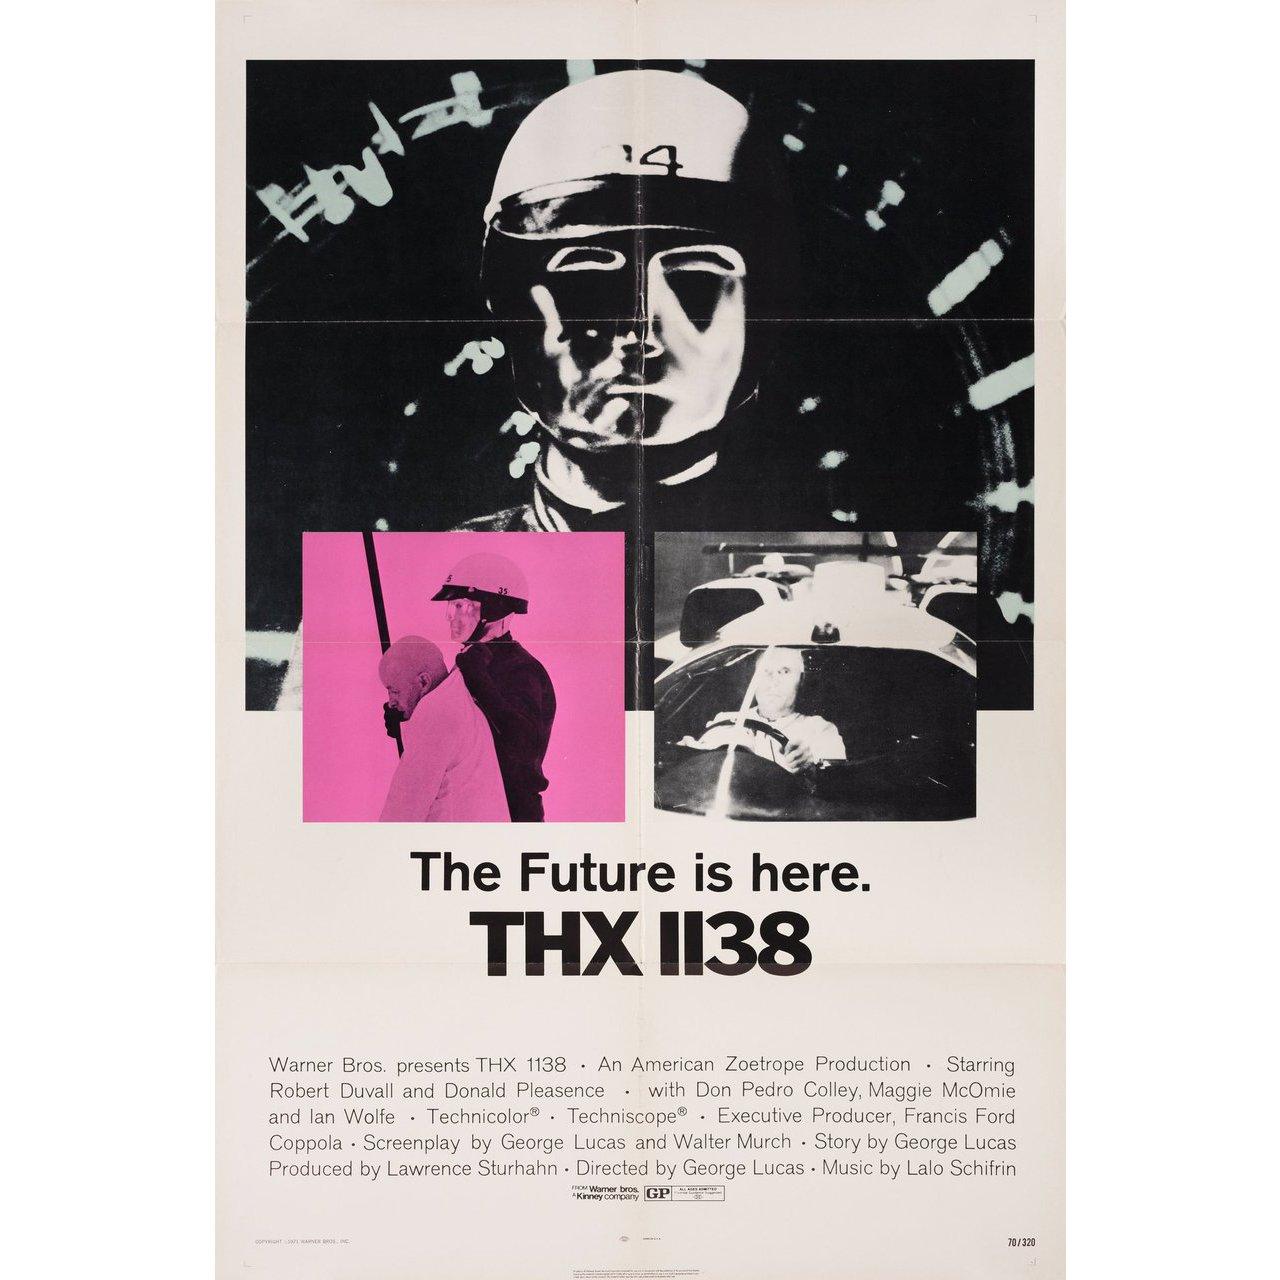 Affiche américaine originale de 1971 pour le film THX 1138 réalisé par George Lucas avec Robert Duvall / Donald Pleasence / Don Pedro Colley / Maggie McOmie. Très bon état, plié. De nombreuses affiches originales ont été publiées pliées ou ont été